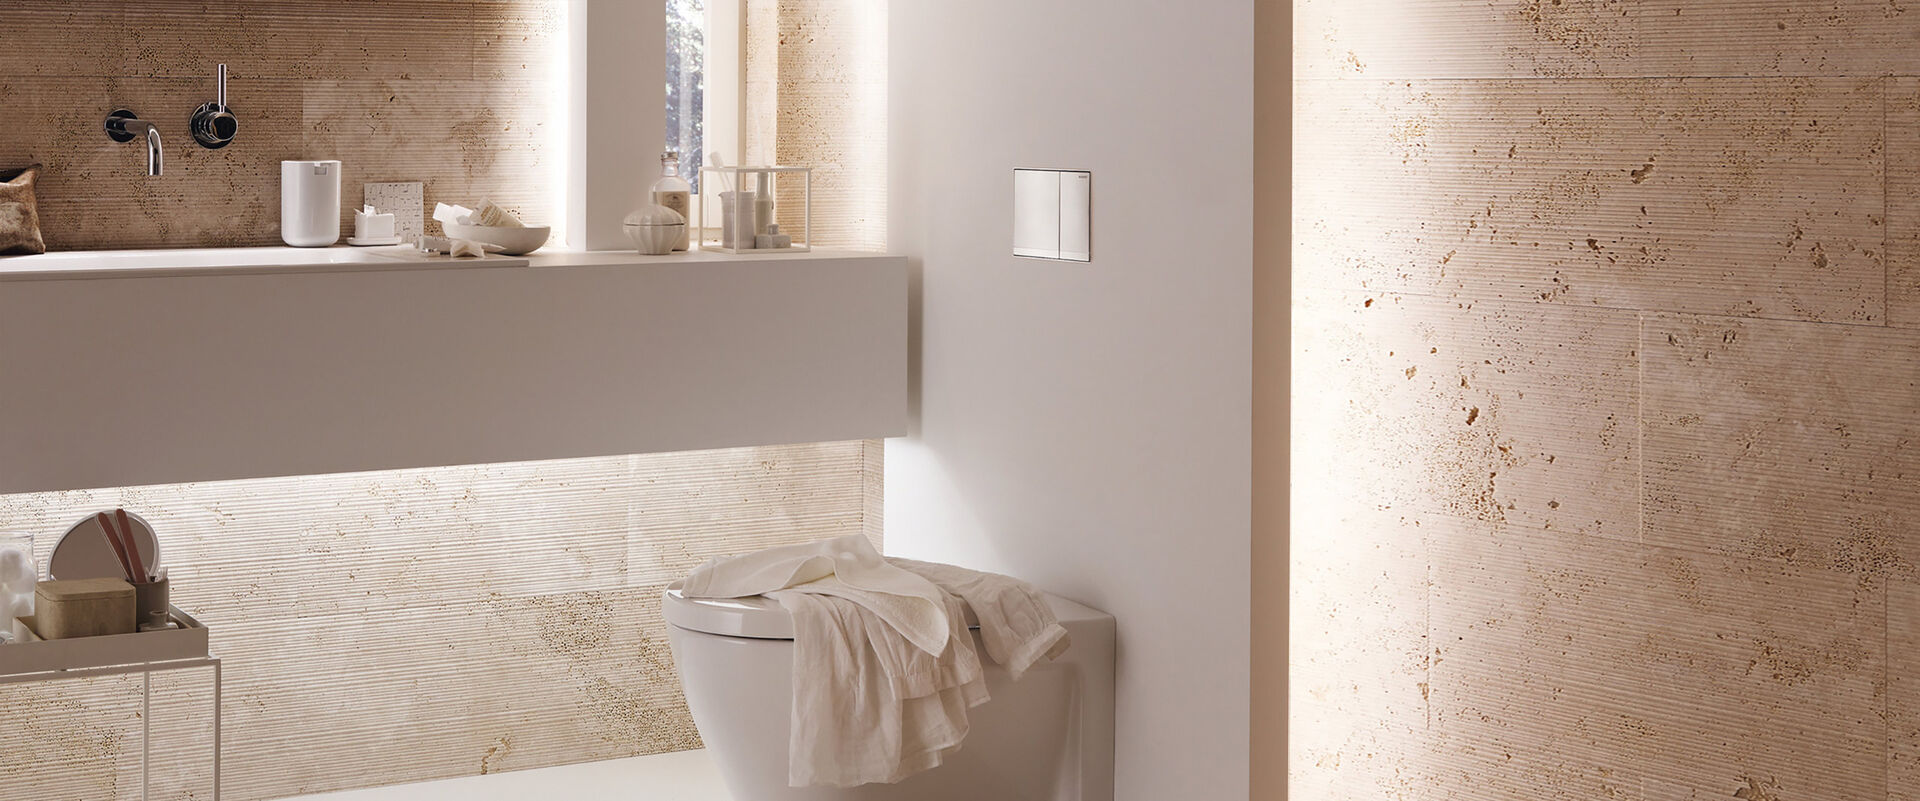 Fokus auf den WC-Bereich eines in warmen Farben beleuchteten Badezimmers von Geberit. Das WC wurde mit einer Sigma 60 Drückerplatte versehen.